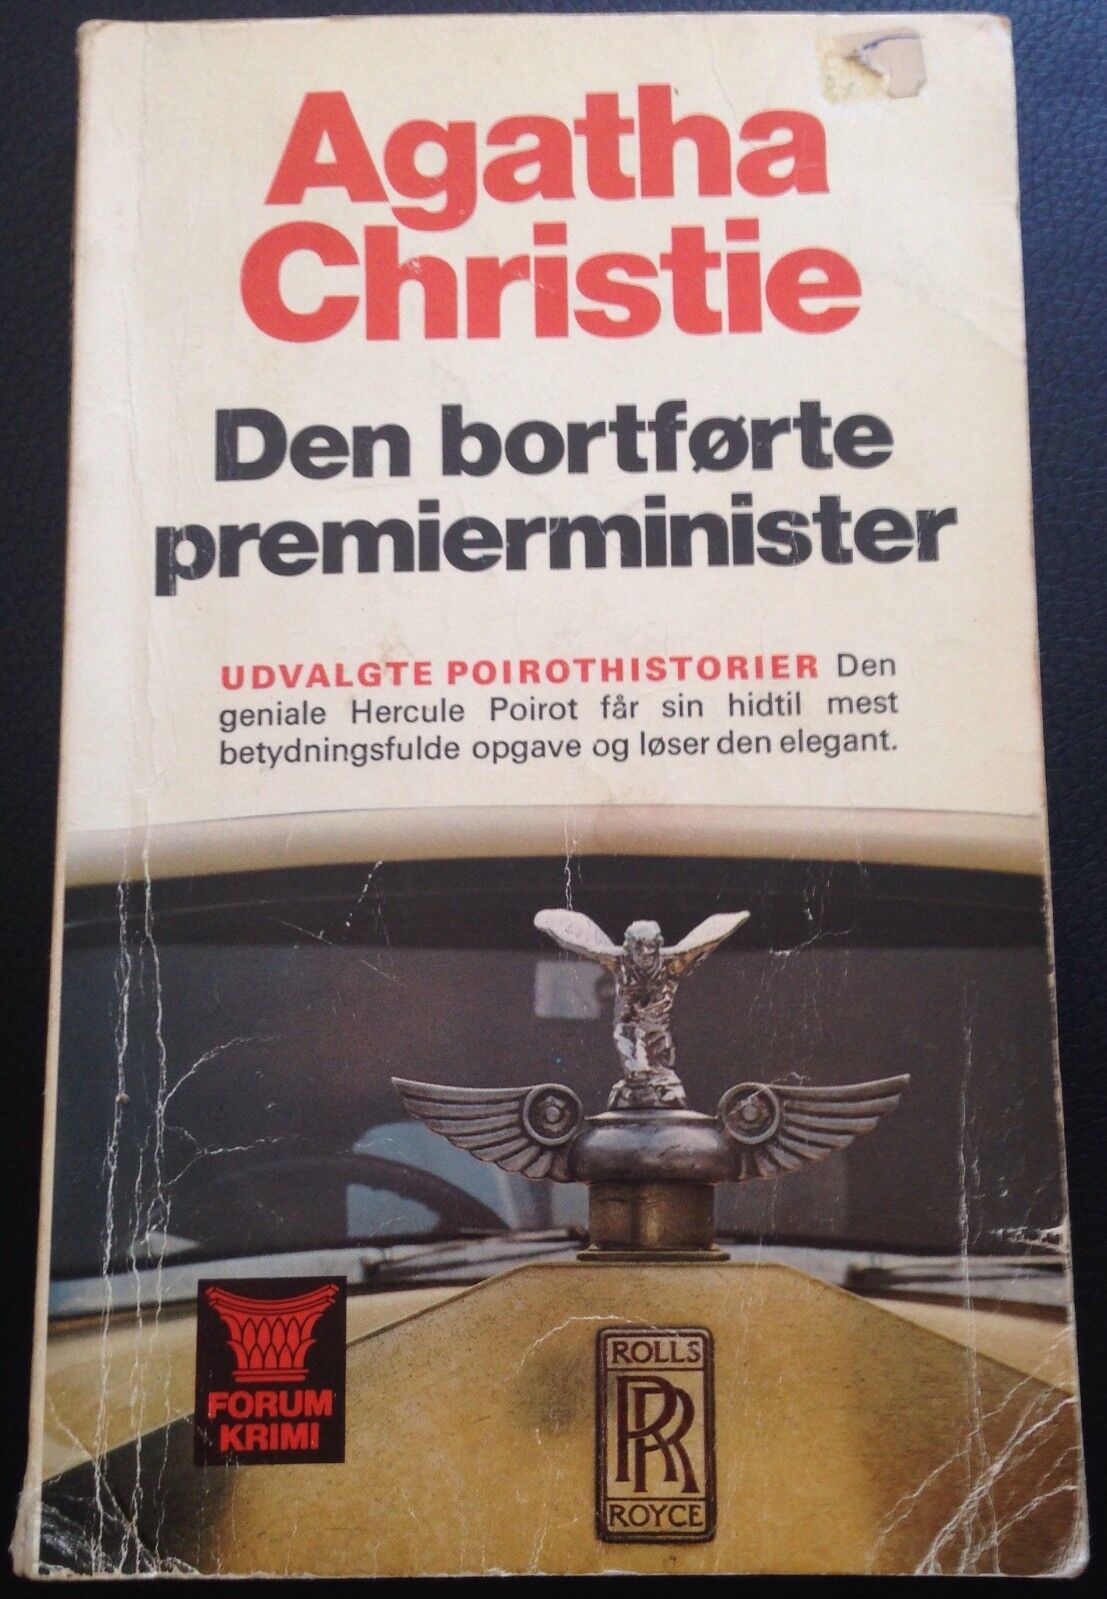 Den bortforte premierminister - Agatha Christie - Forum - 1973 - M